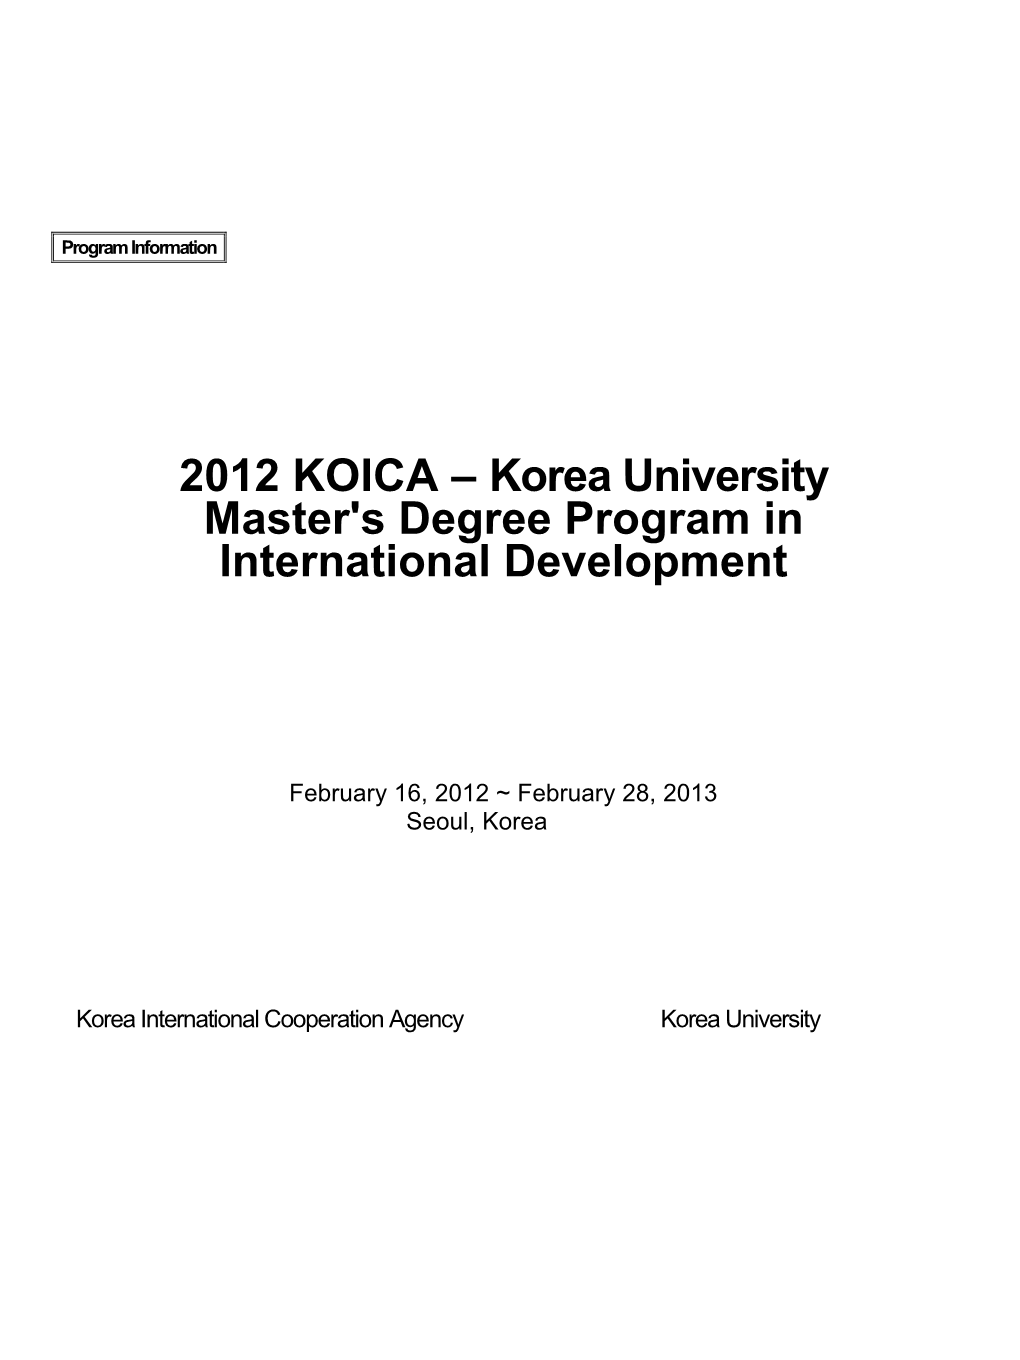 2012 KOICA – Korea University Master's Degree Program In